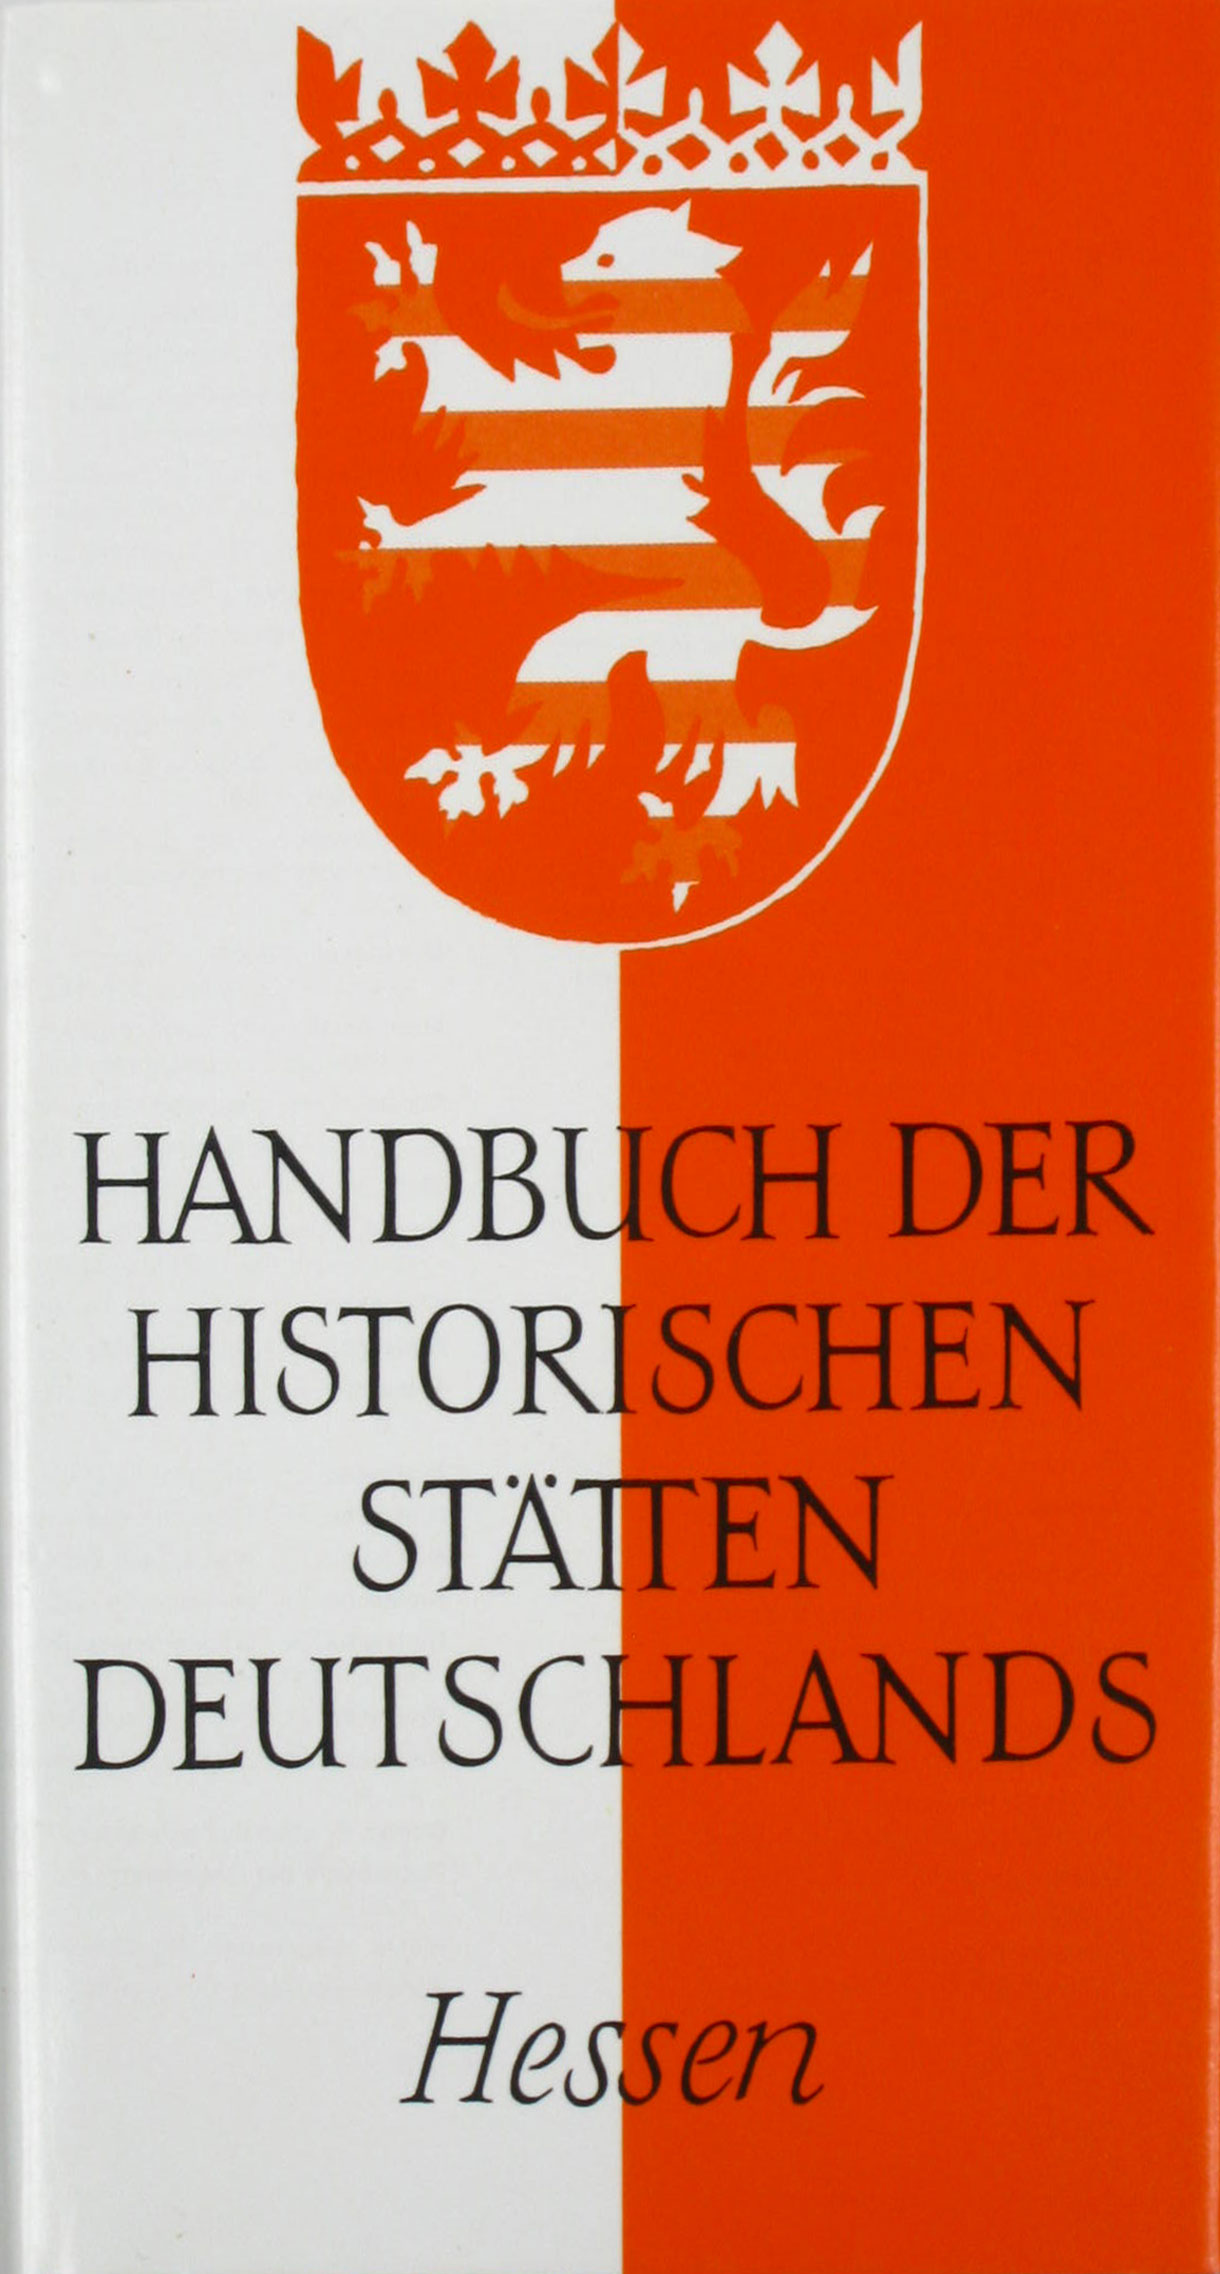 Sante, Georg Wilhelm (Hrsg.):  Handbuch der historischen Stätten Deutschlands. Hessen. Band 4. 